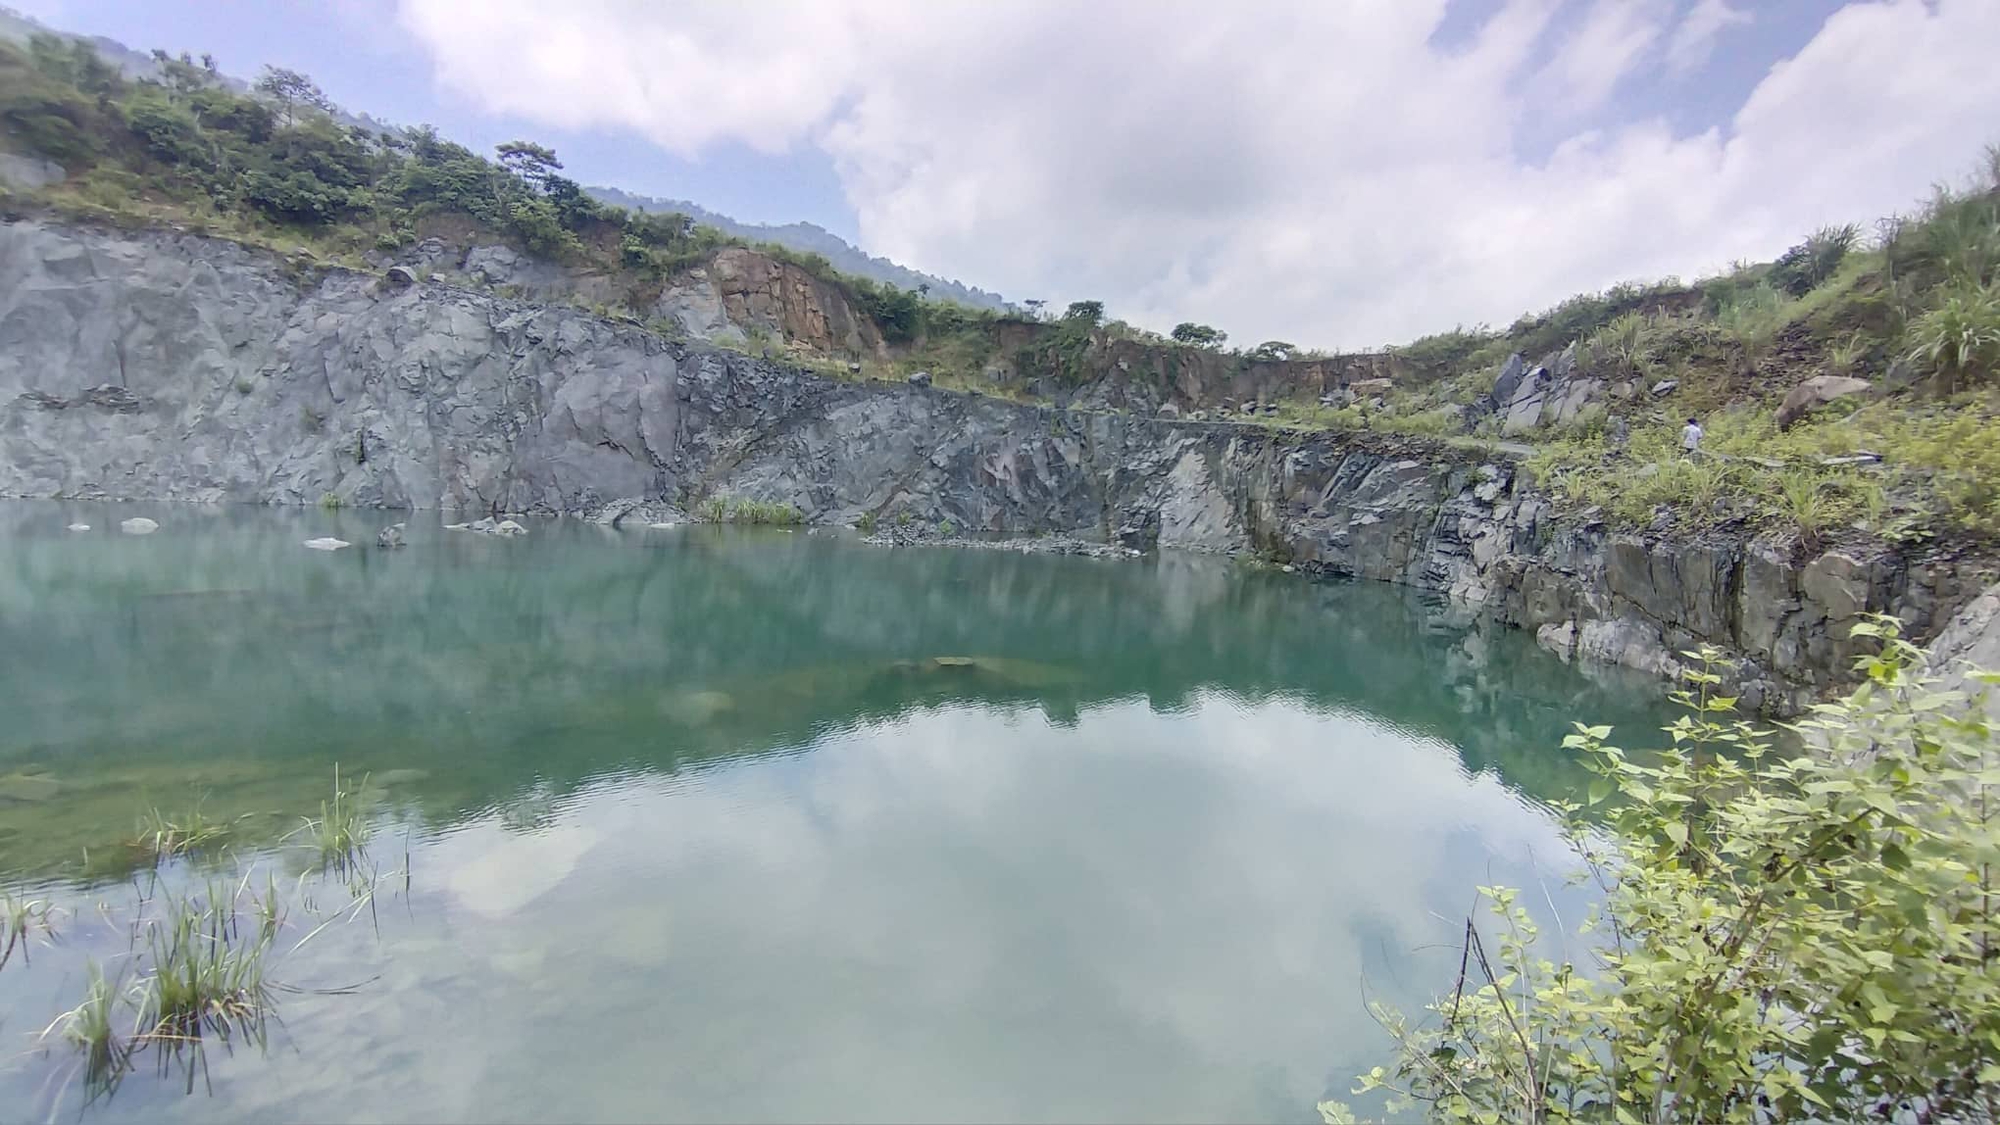 Hậu khai thác khoáng sản ở Hà Nội: Sẽ cưỡng chế việc đóng cửa mỏ và hoàn nguyên môi trường - Ảnh 1.